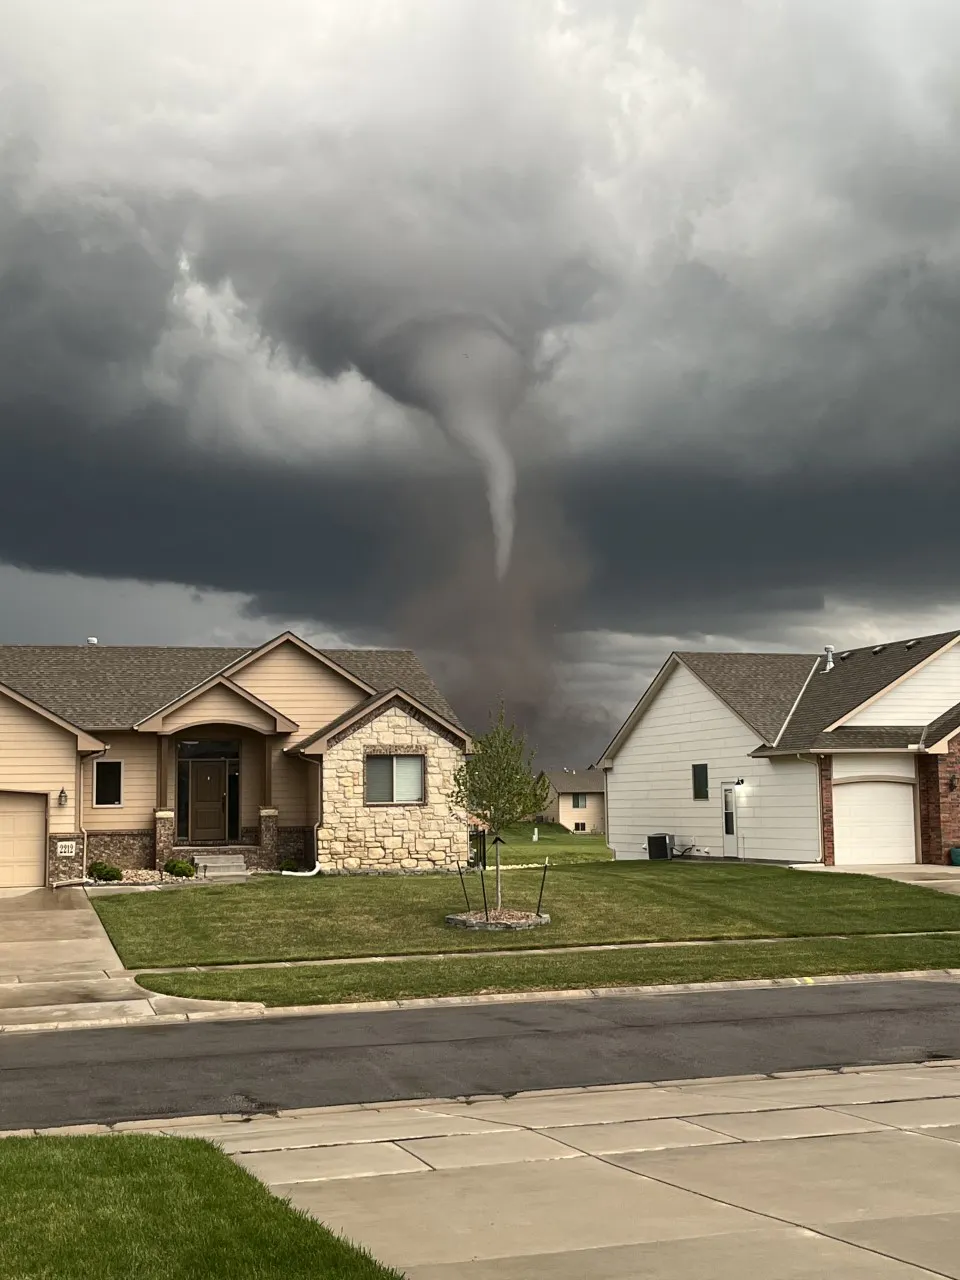 Val & Amy Castor Track Tornado Near Andover, Kansas